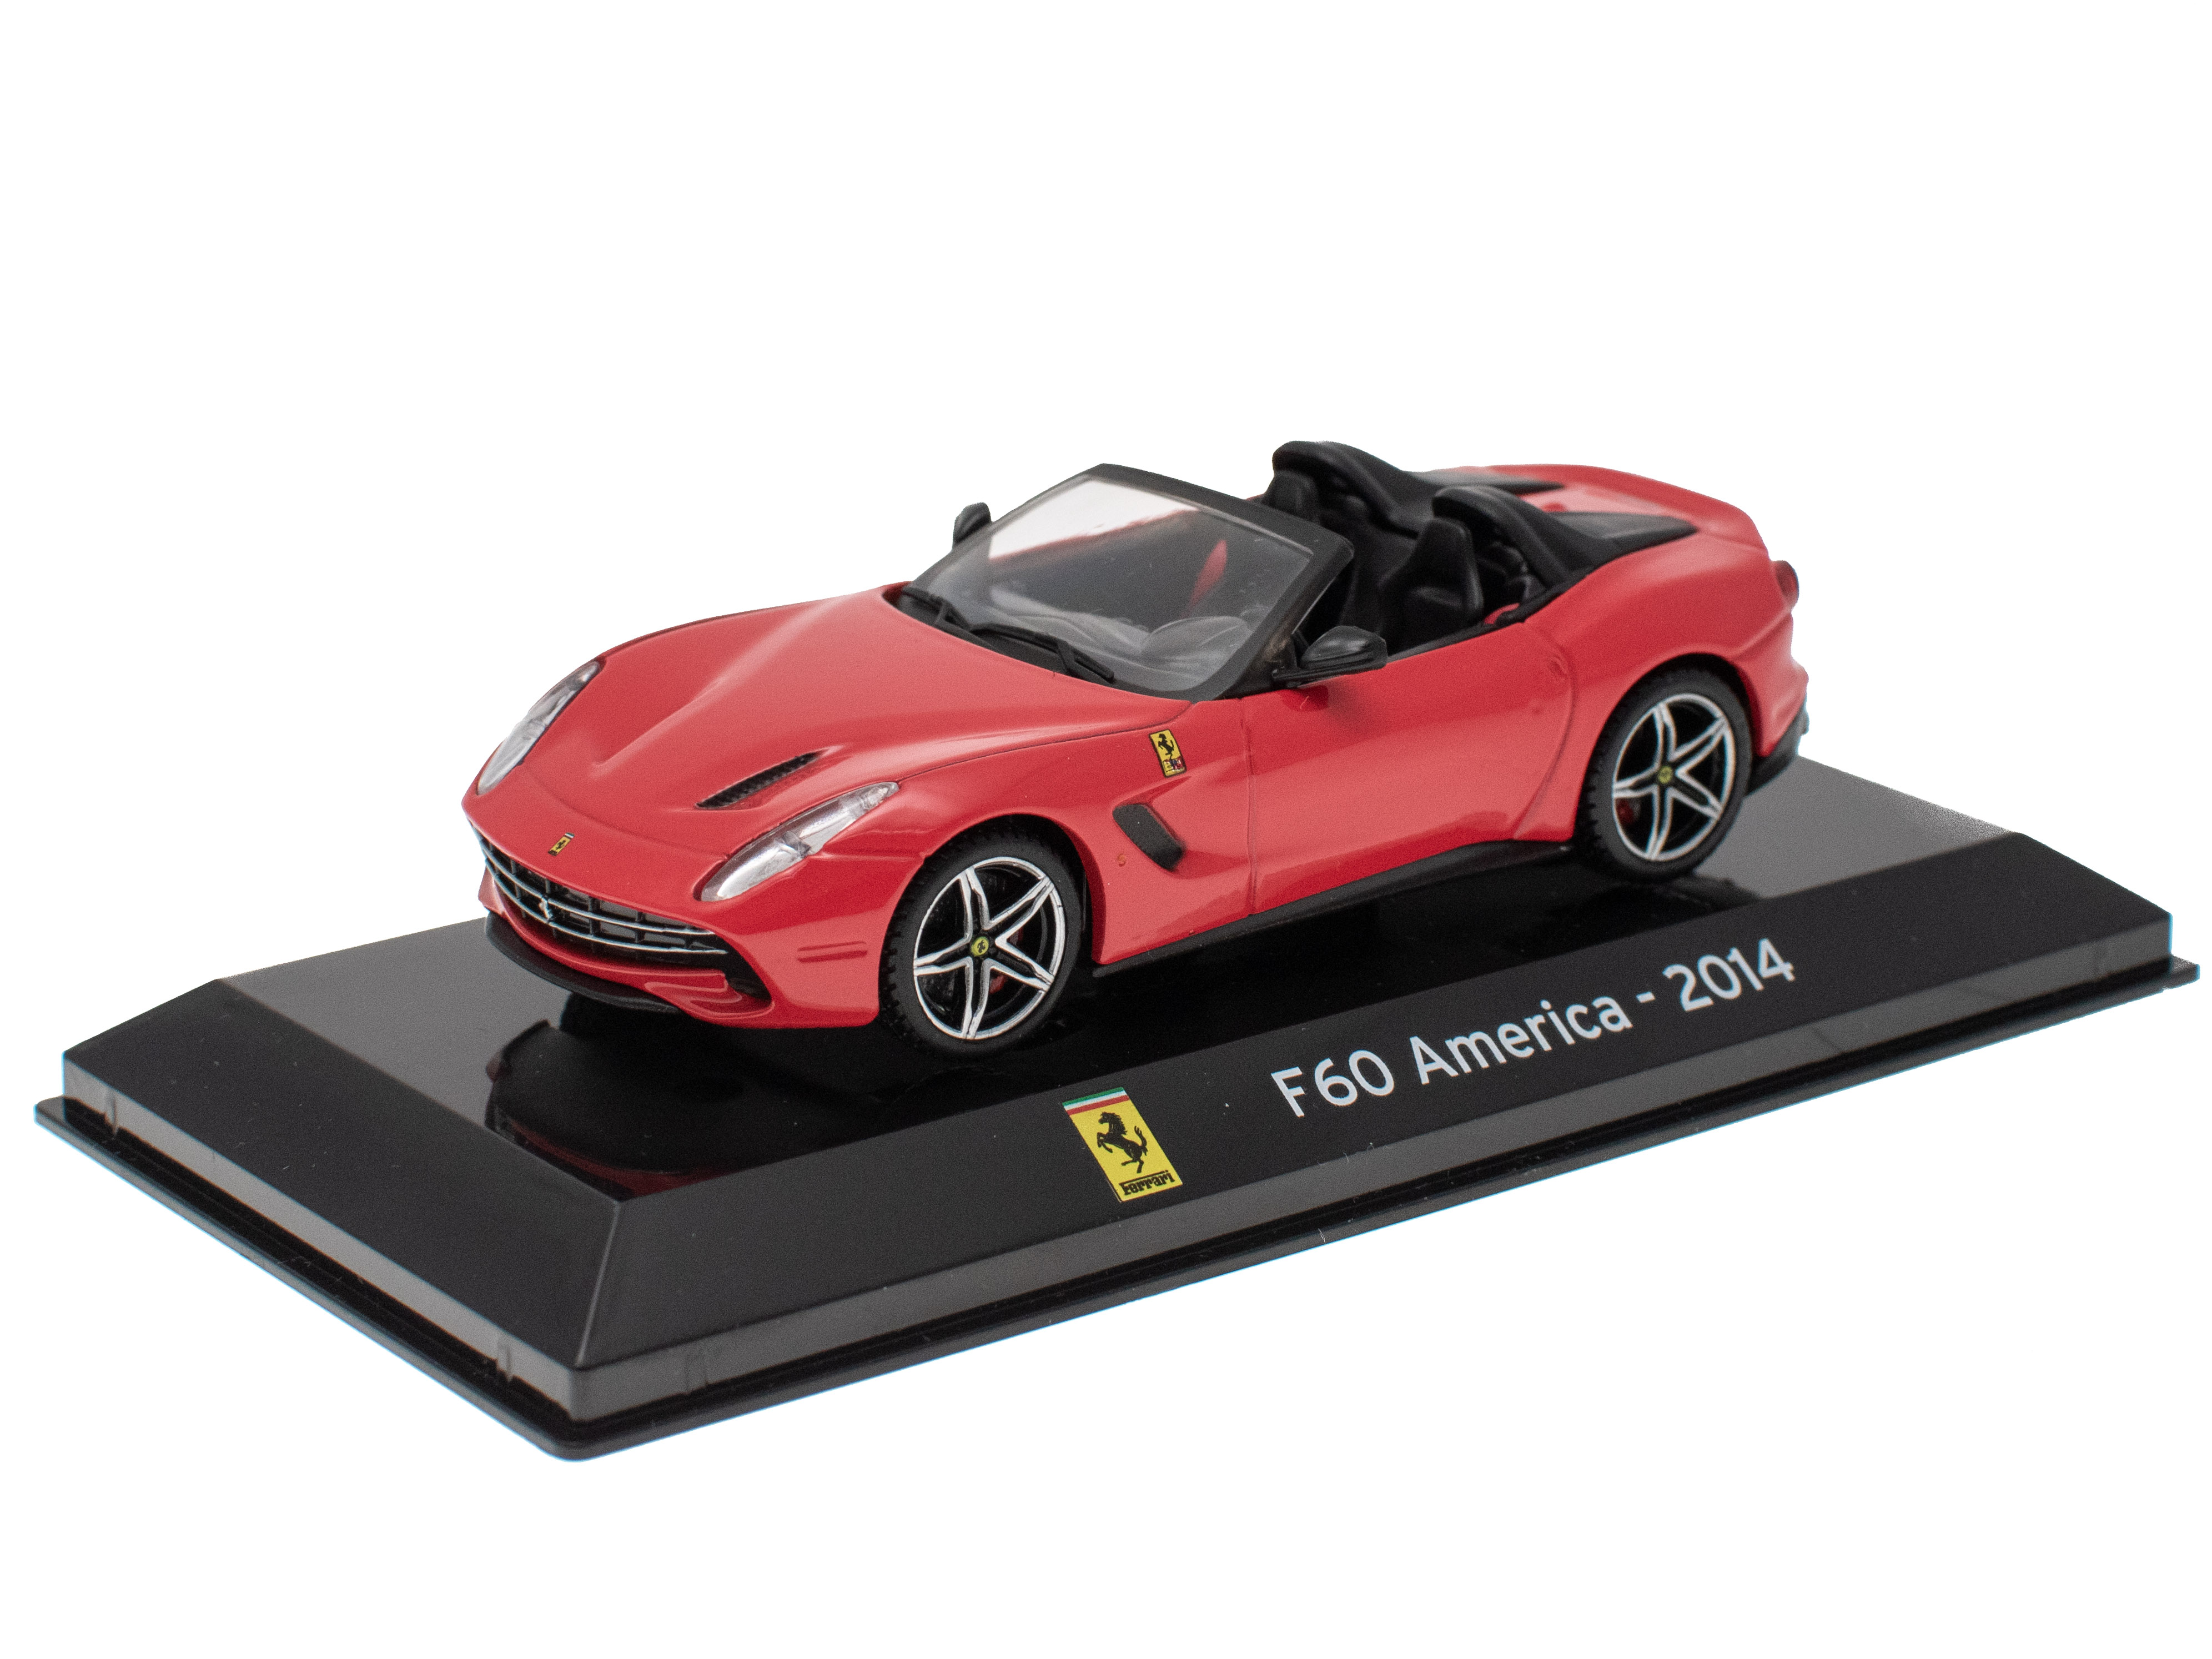 Ferrari F60 America - 2014